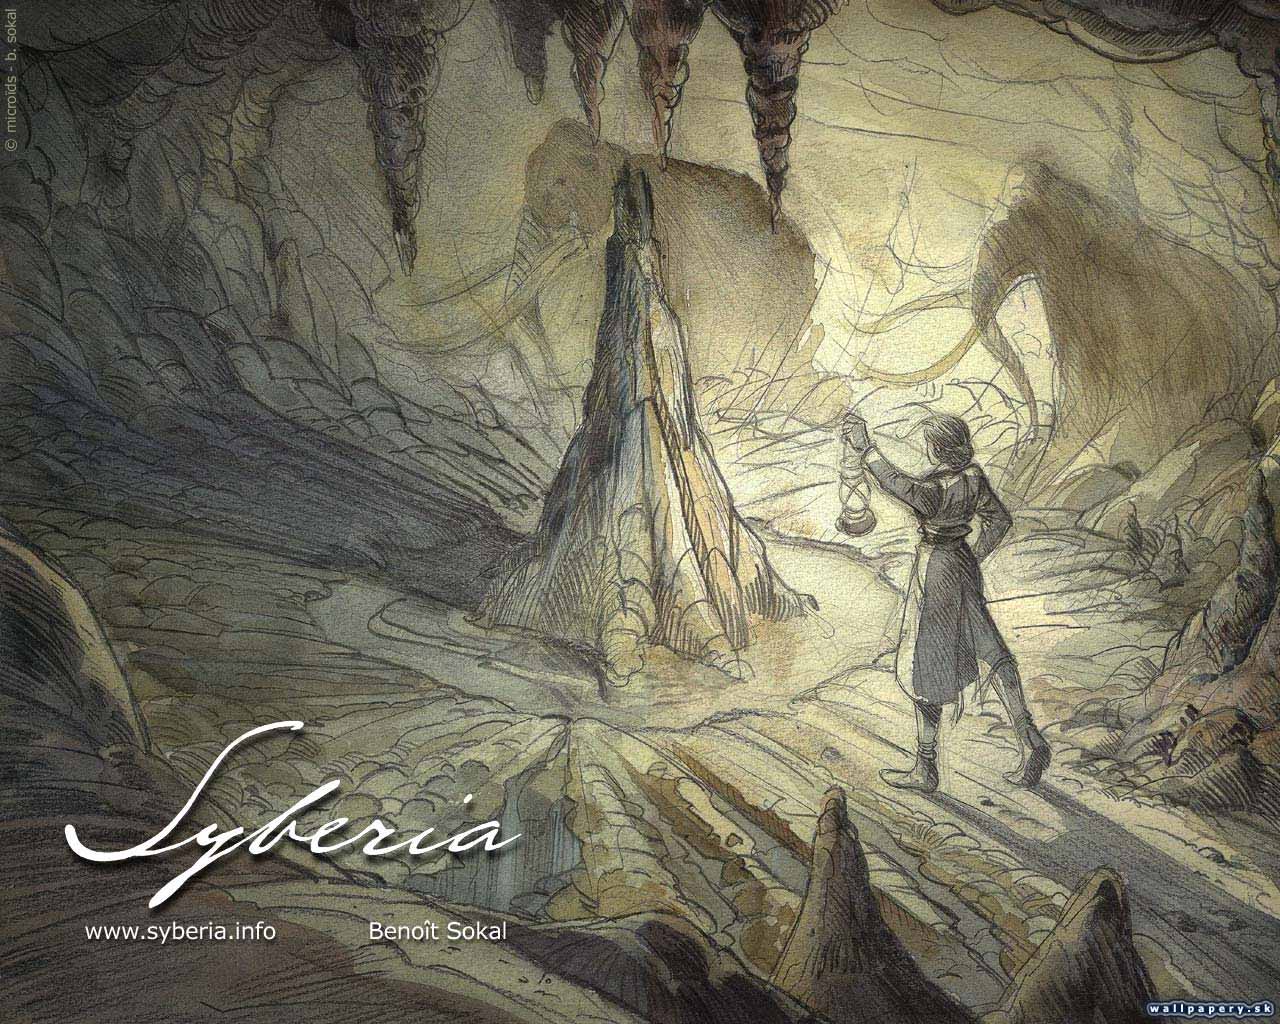 Syberia - wallpaper 36